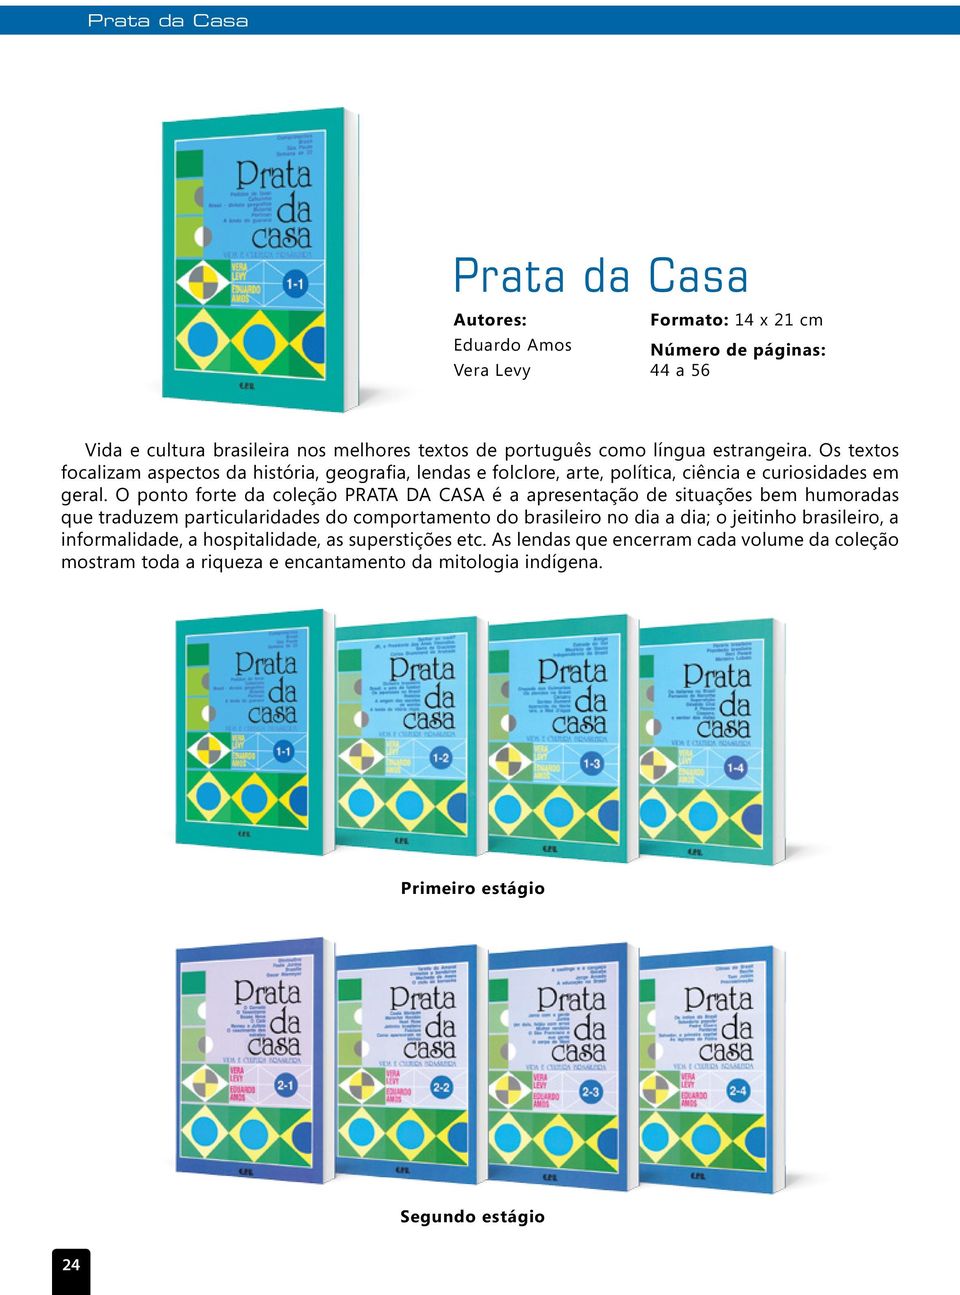 O ponto forte da coleção PRATA DA CASA é a apresentação de situações bem humoradas que traduzem particularidades do comportamento do brasileiro no dia a dia; o jeitinho